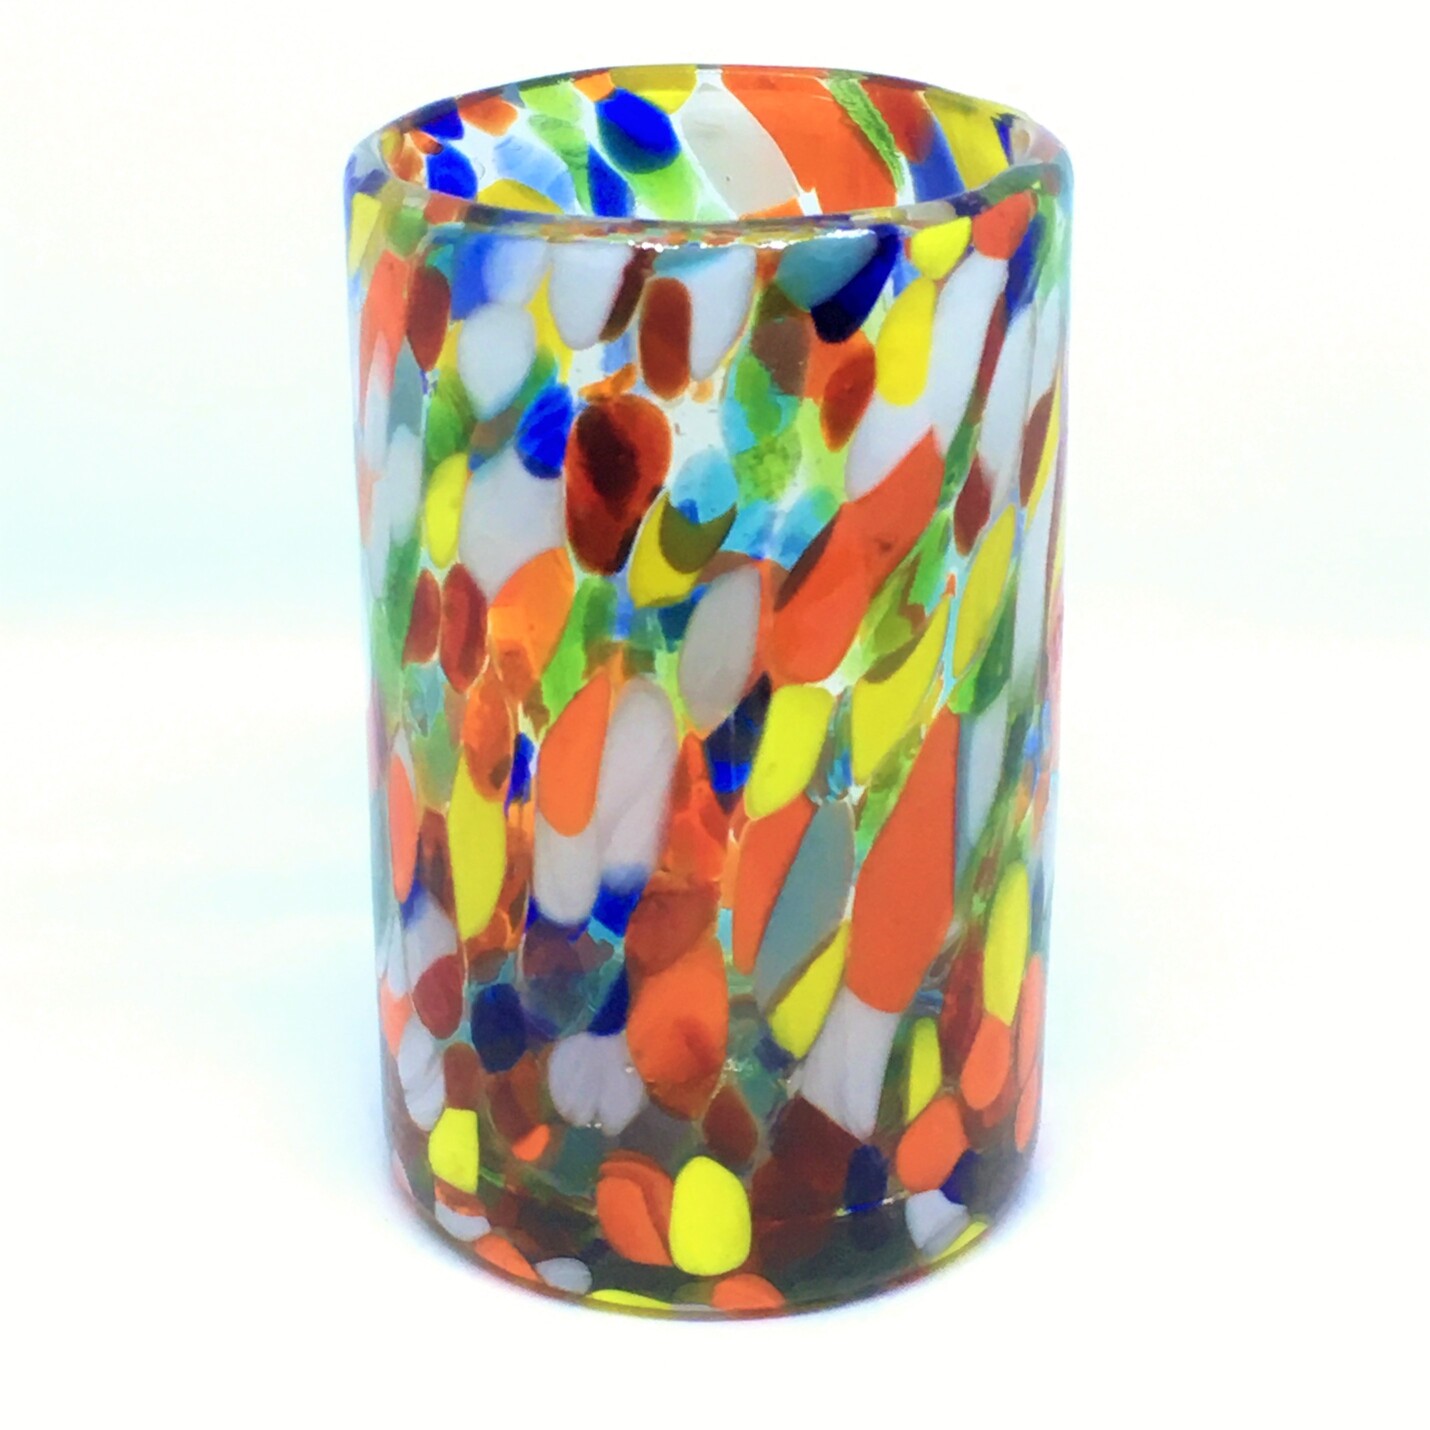 Estilo Confeti / Juego de 6 vasos grandes 'Confeti Carnaval' / Deje entrar a la primavera en su casa con éste colorido juego de vasos. El decorado con vidrio multicolor los hace resaltar en cualquier lugar.